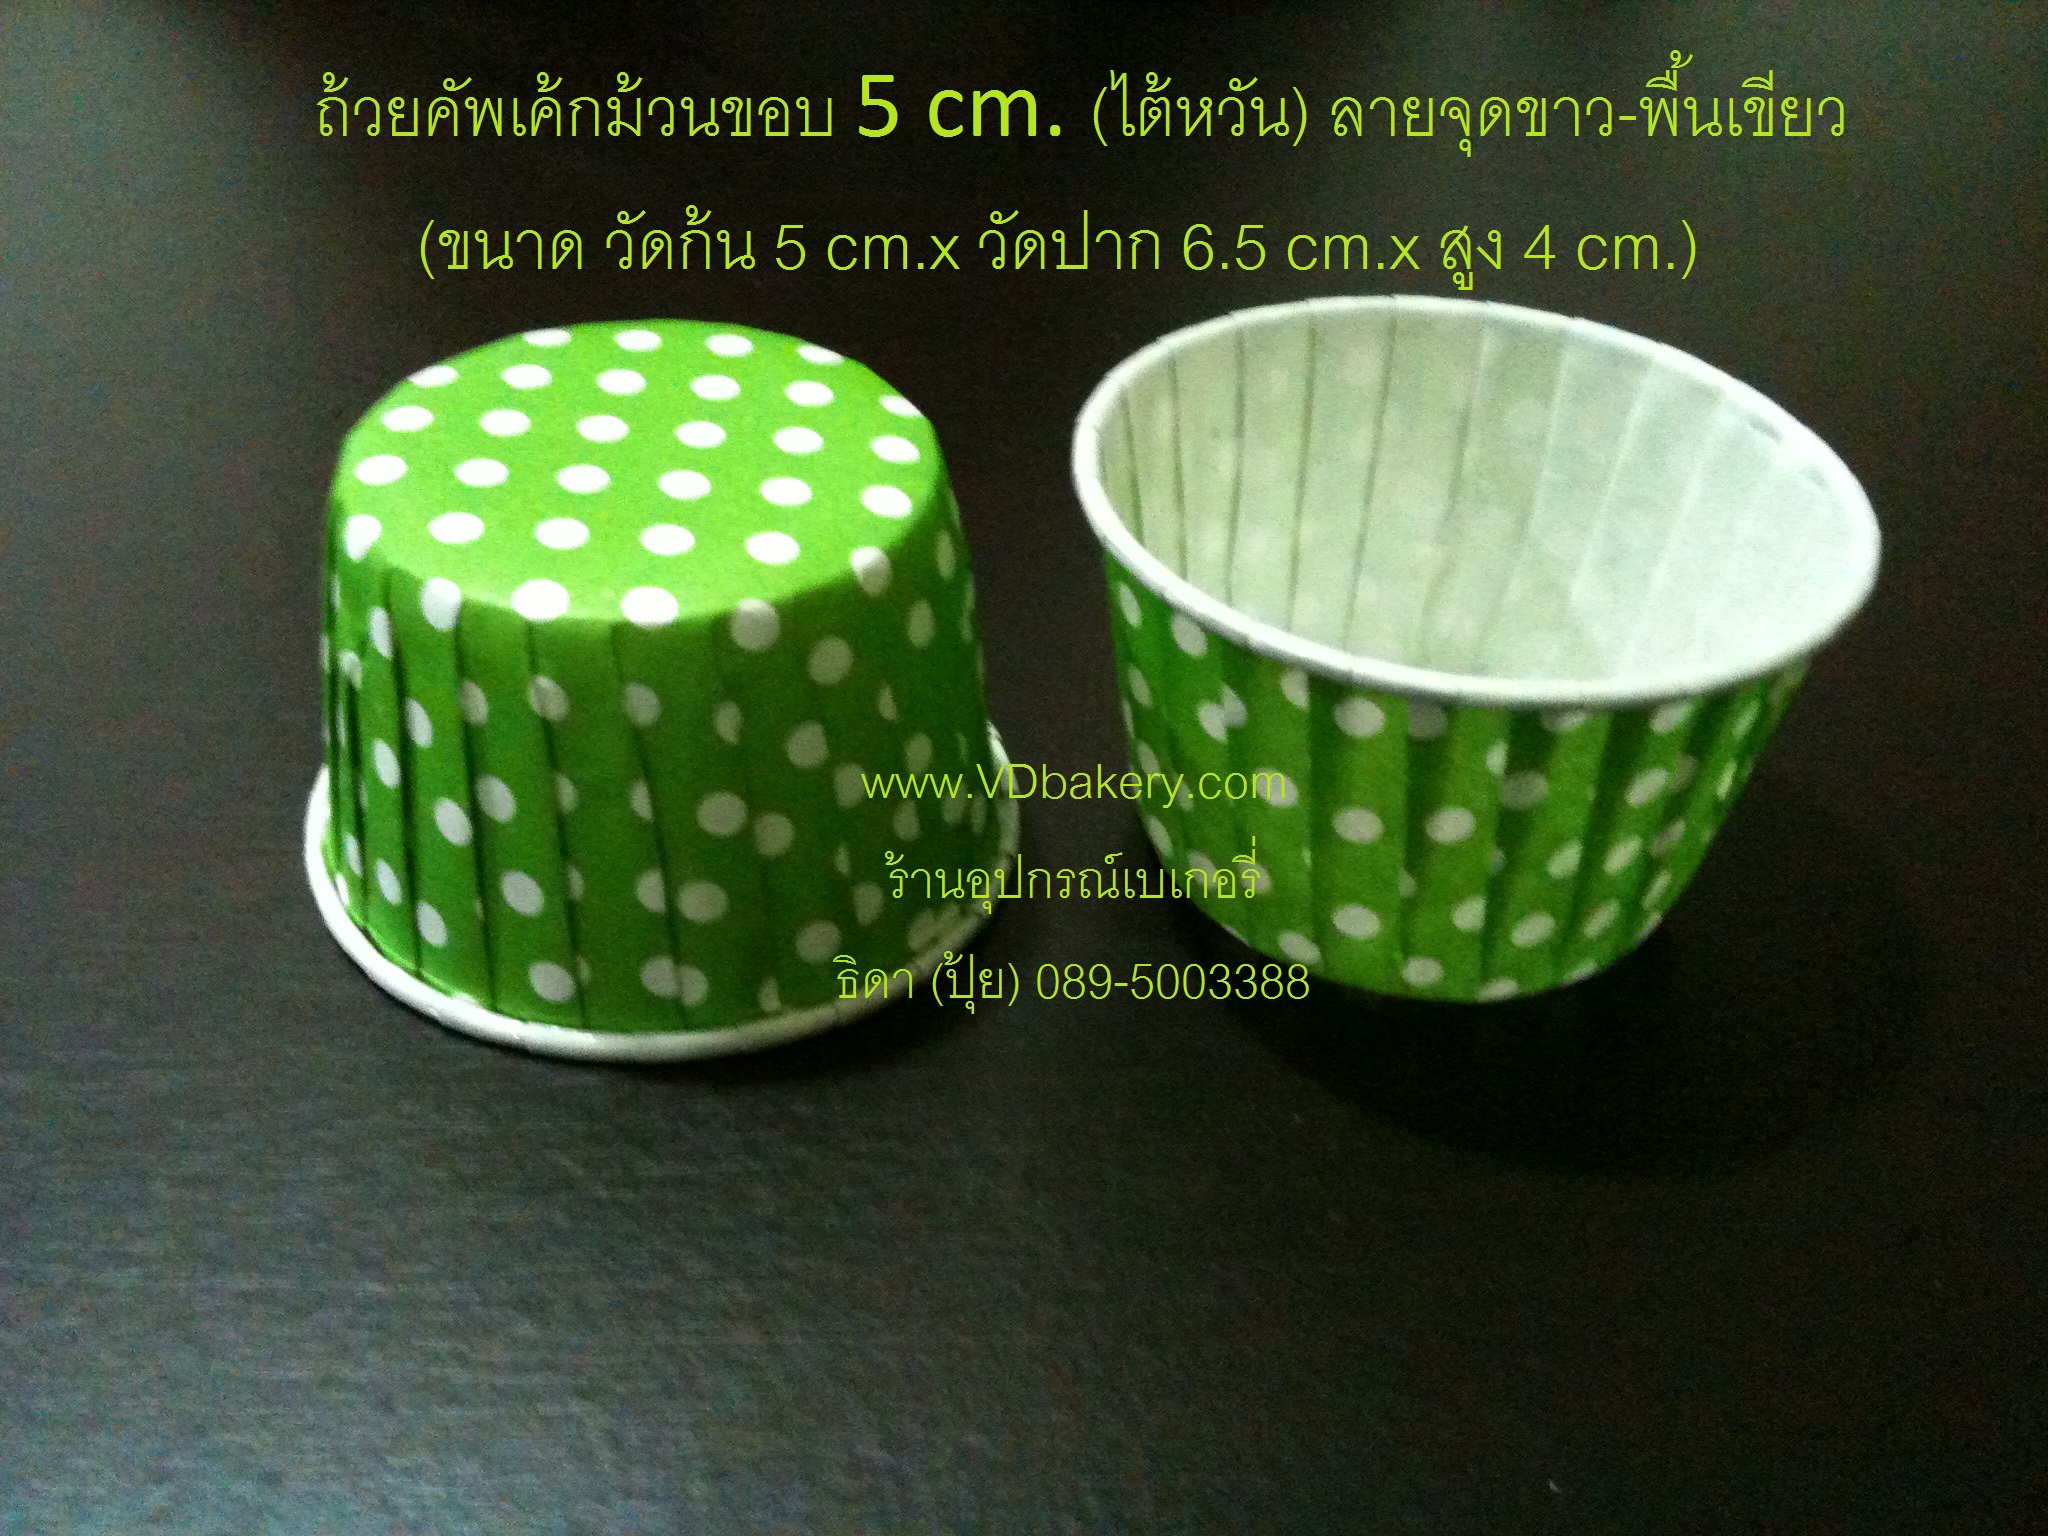 ถ้วยคัพเค้กม้วนขอบ 5 cm. (ไต้หวัน) ลาย Green Dot (100ใบ/แถว)